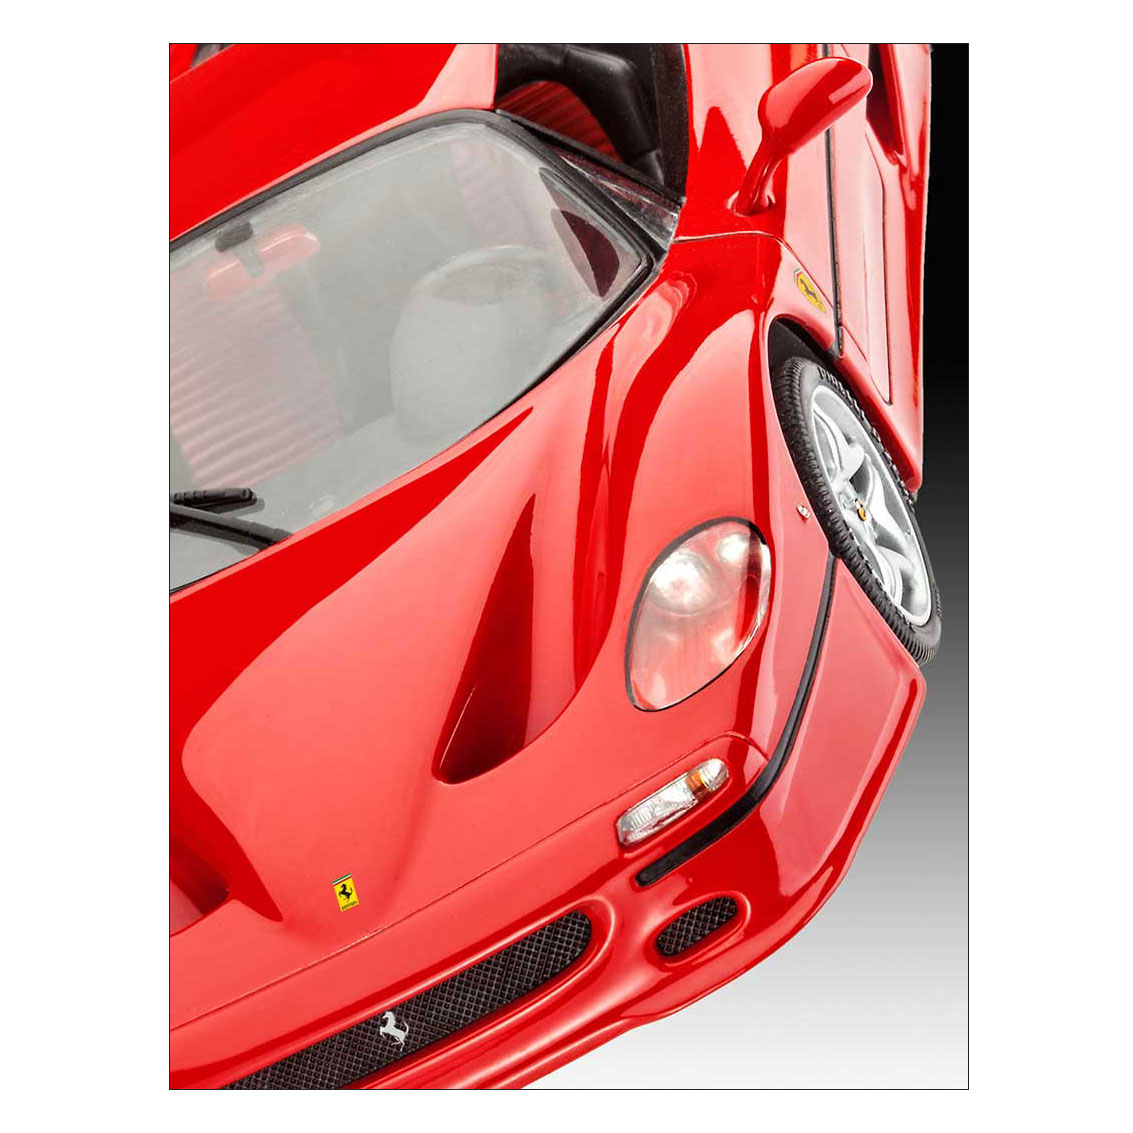 Revell F50 Modelbouw Ferrari